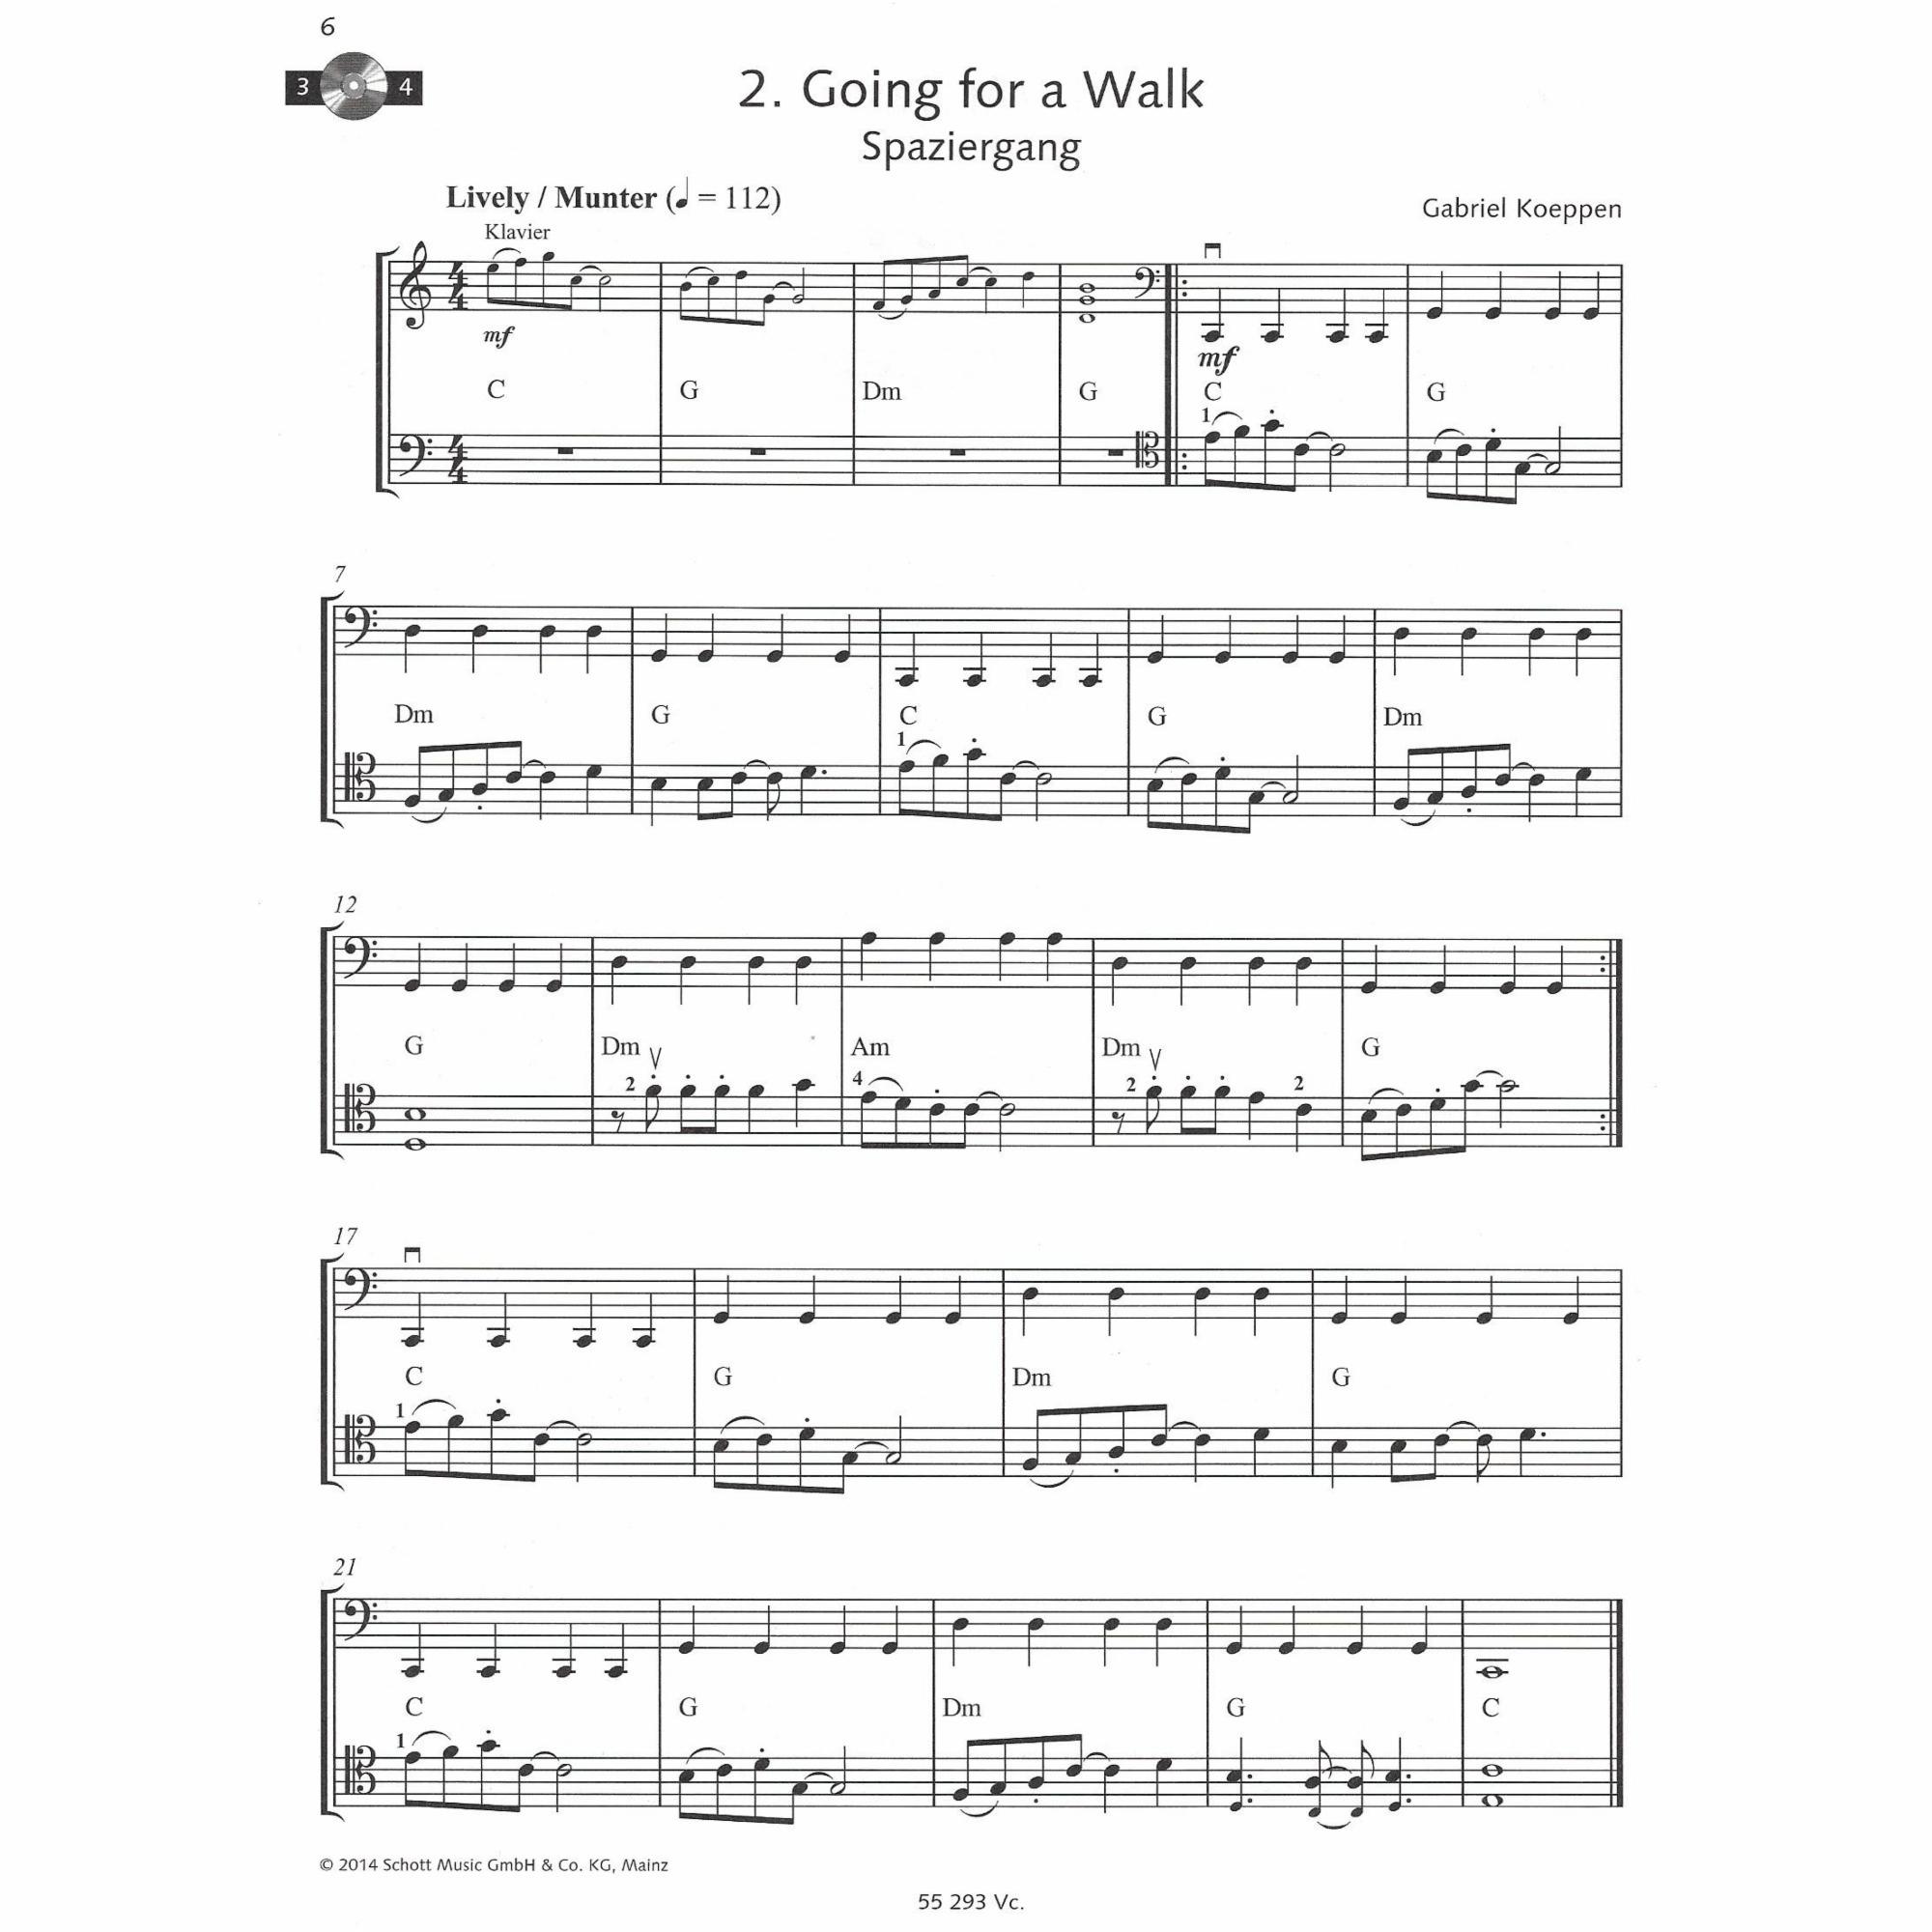 Sample: Hot Cello 1 (Pg. 6)